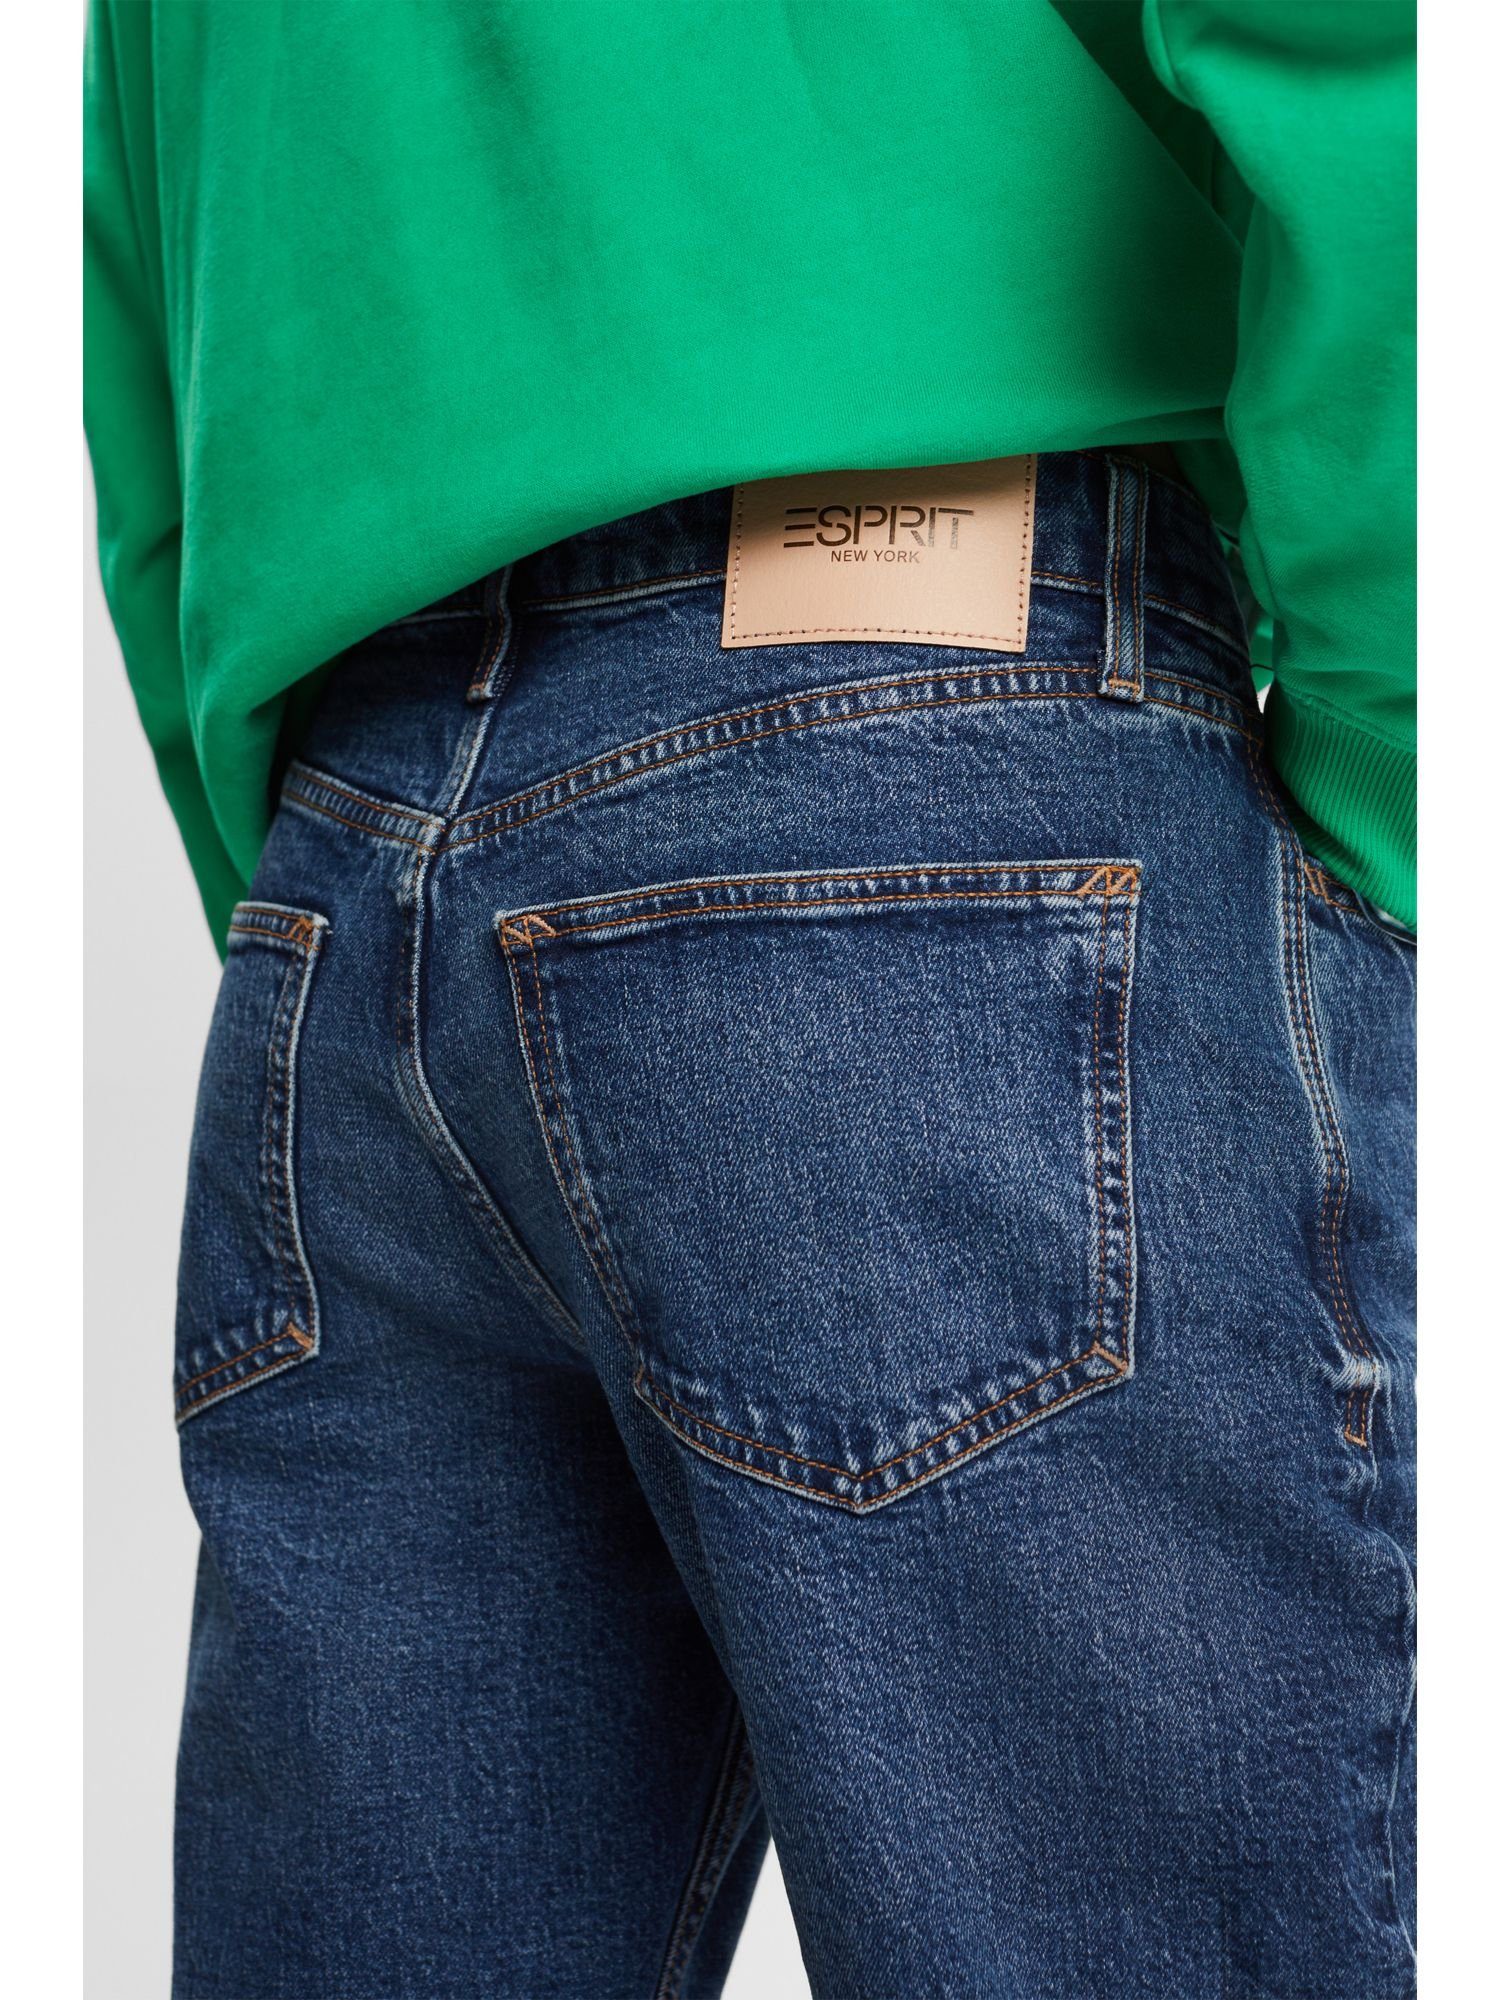 Esprit Straight-Jeans Gerade, konische Jeans mittelhohem Bund mit